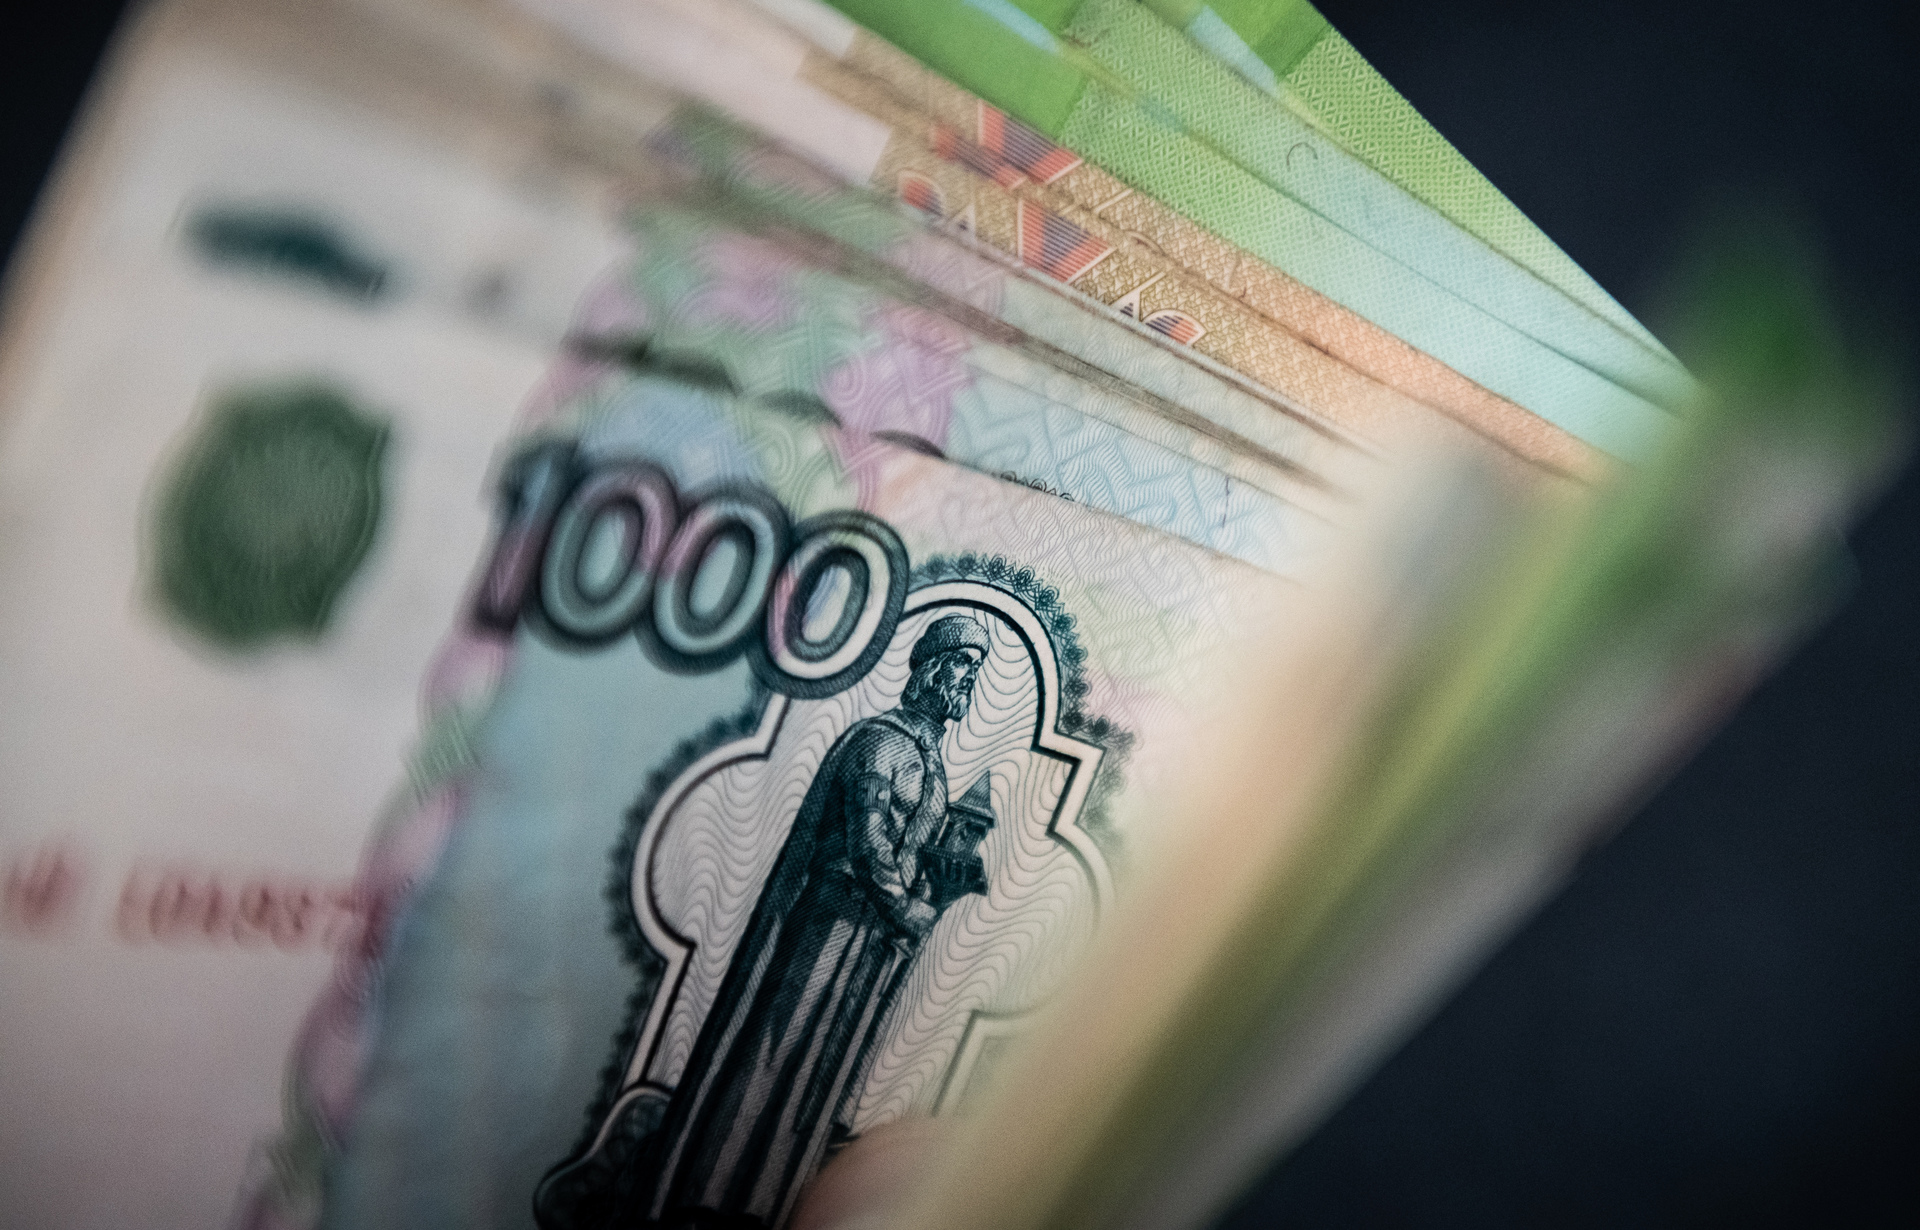 Важно создать условия вкладывать деньги и зарабатывать дома»: Путин одобрил  запуск программы долгосрочных сбережений — РТ на русском